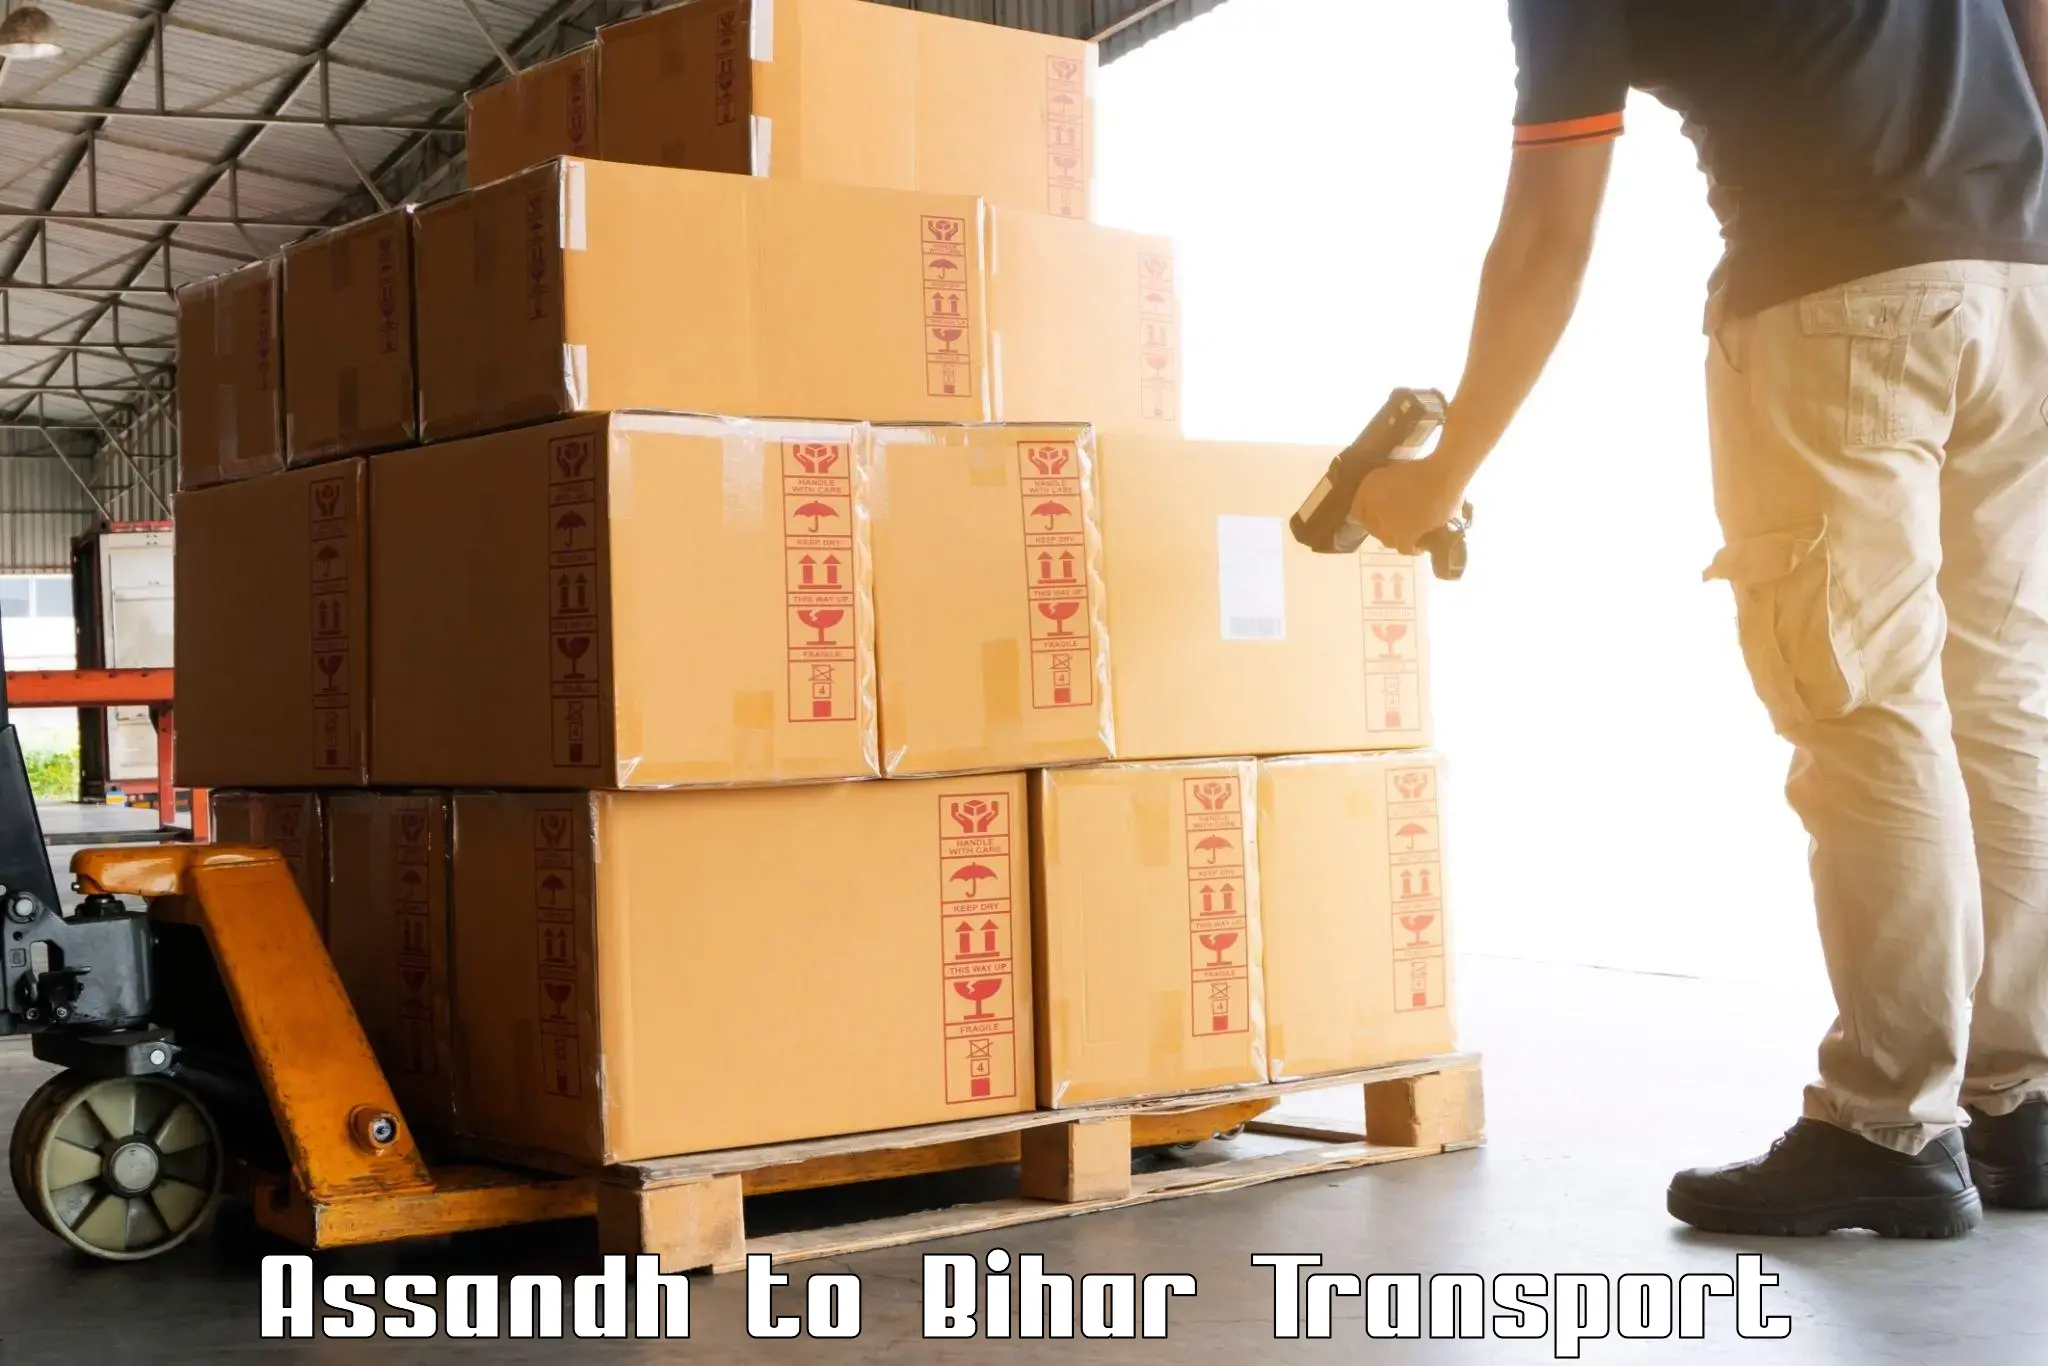 Online transport Assandh to Sheonar